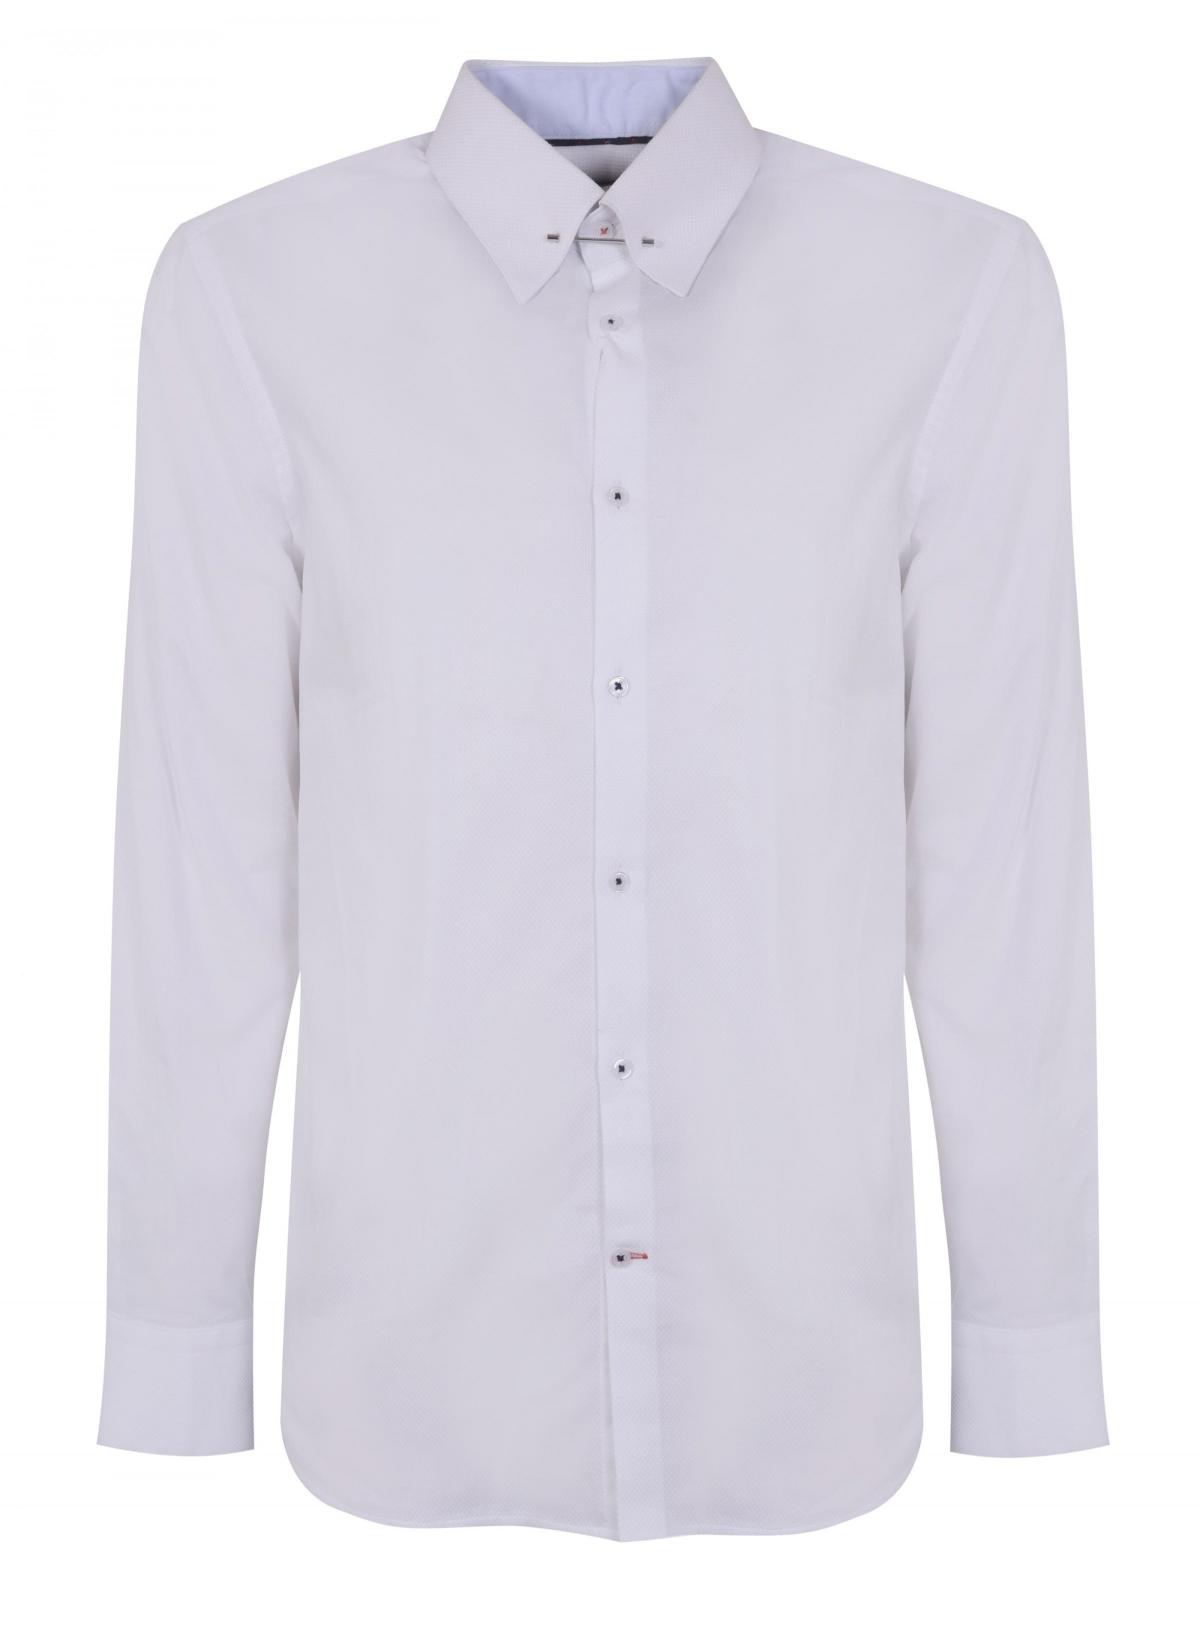 Burton Menswear London, Pin Collar White Shirt, £28